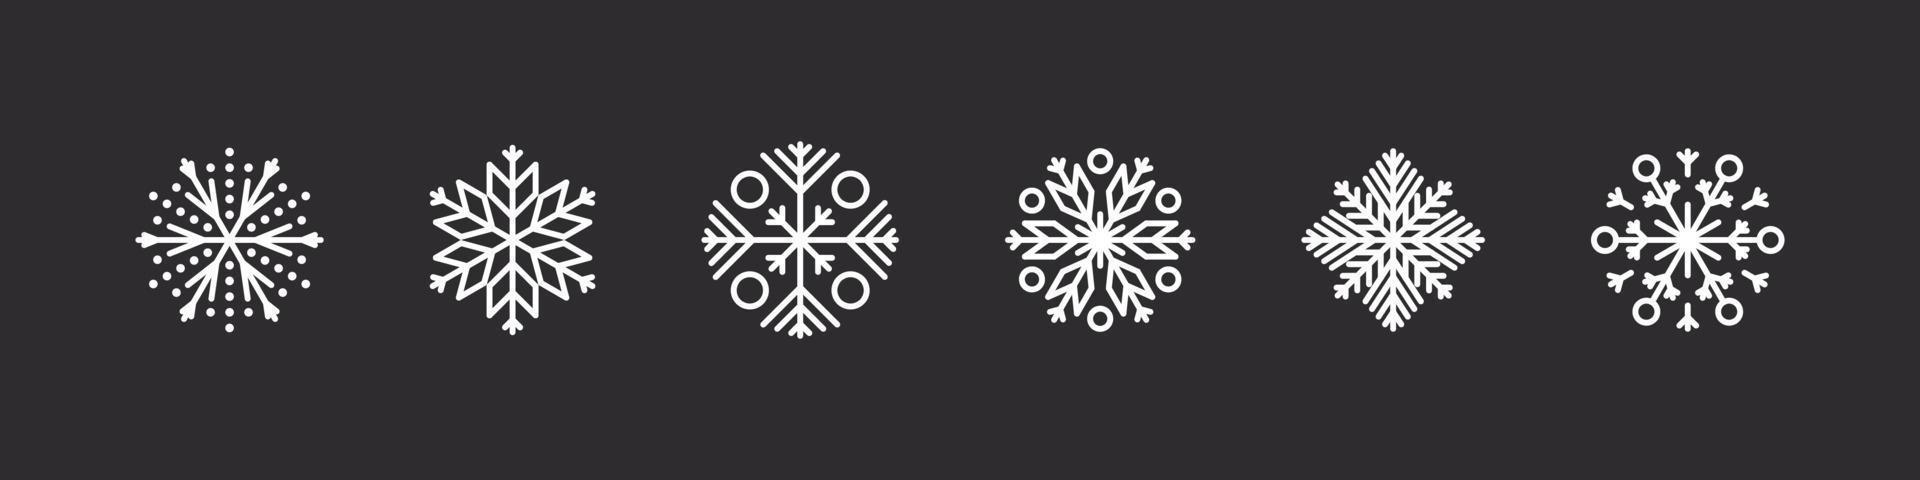 conjunto de iconos de copos de nieve. copos de nieve blancos sobre un fondo oscuro. signos de navidad. hermosos carteles de copos de nieve. ilustración vectorial vector